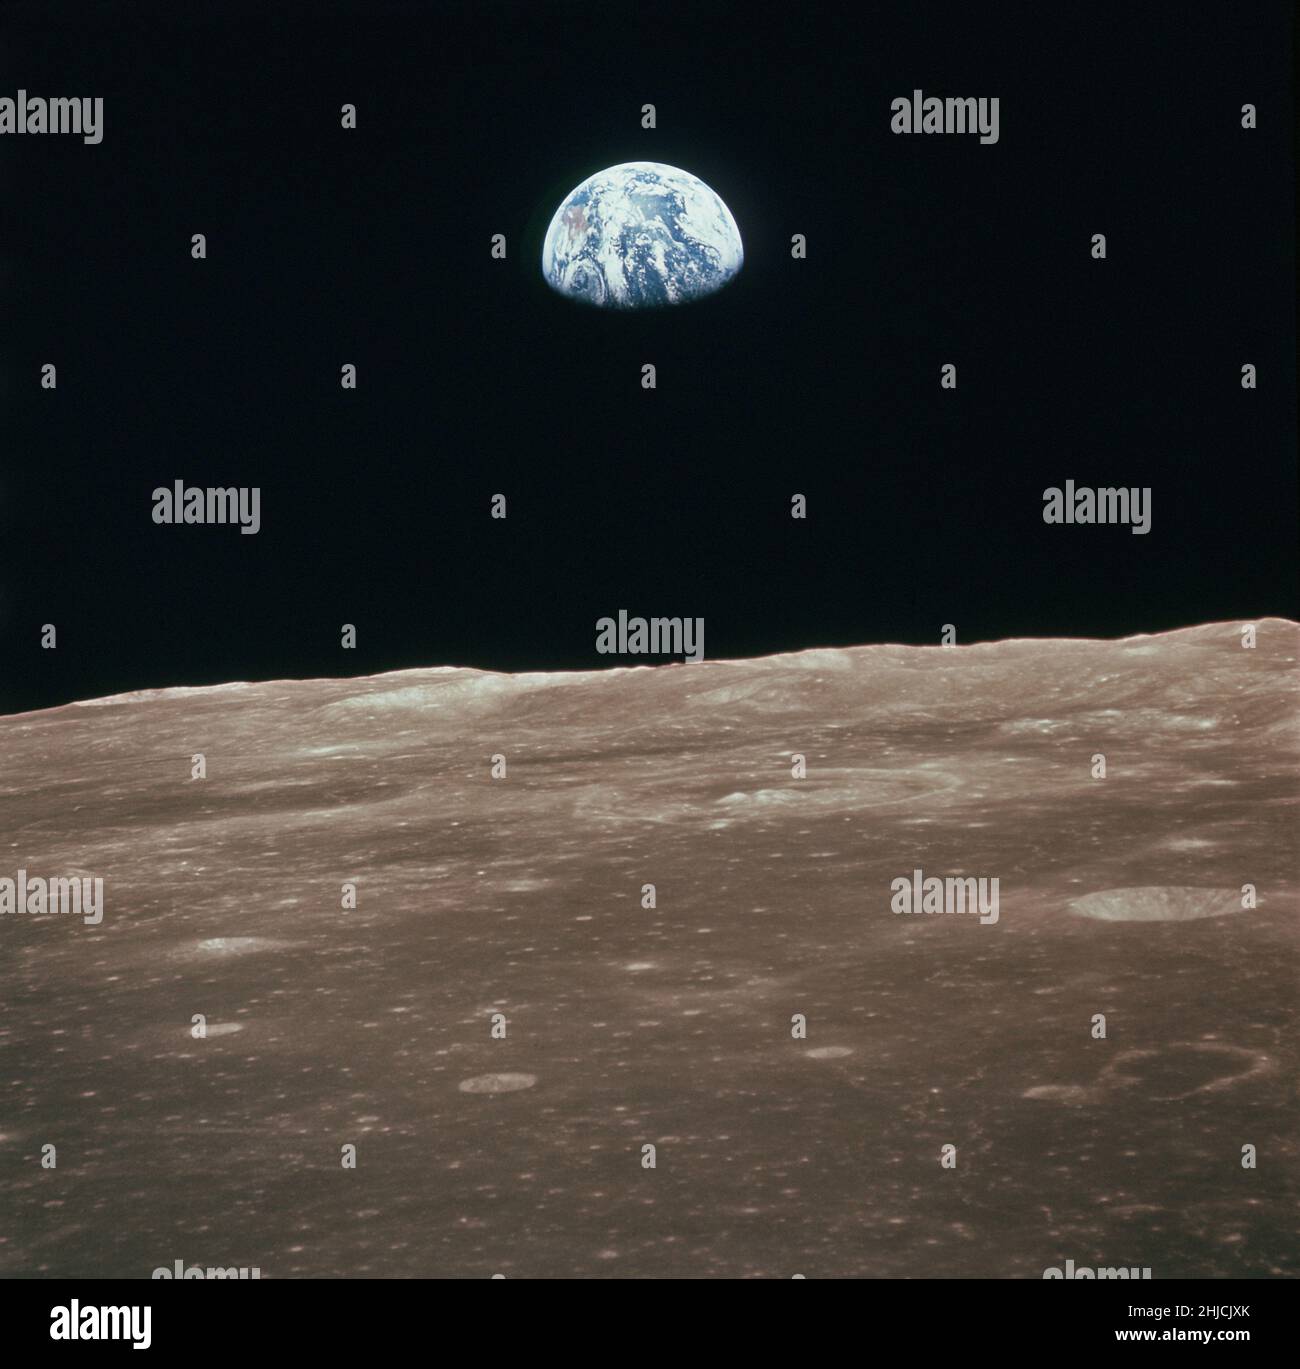 Questa visione della Terra che sorge sull'orizzonte della luna è stata presa dalla navicella spaziale Apollo 11 nel luglio del 1969. Il terreno lunare raffigurato si trova nella zona del mare di Smyth, sul lato sinistro. Le coordinate del centro del terreno sono 85 gradi longitudine est e 3 gradi latitudine nord. Apollo 11 fu il faro spaziale che sbarcò le prime due persone sulla Luna. Il comandante Neil Armstrong e il pilota del modulo lunare Buzz Aldrin sbarcarono l'Apollo Lunar Module Eagle il 20 luglio 1969. Foto Stock